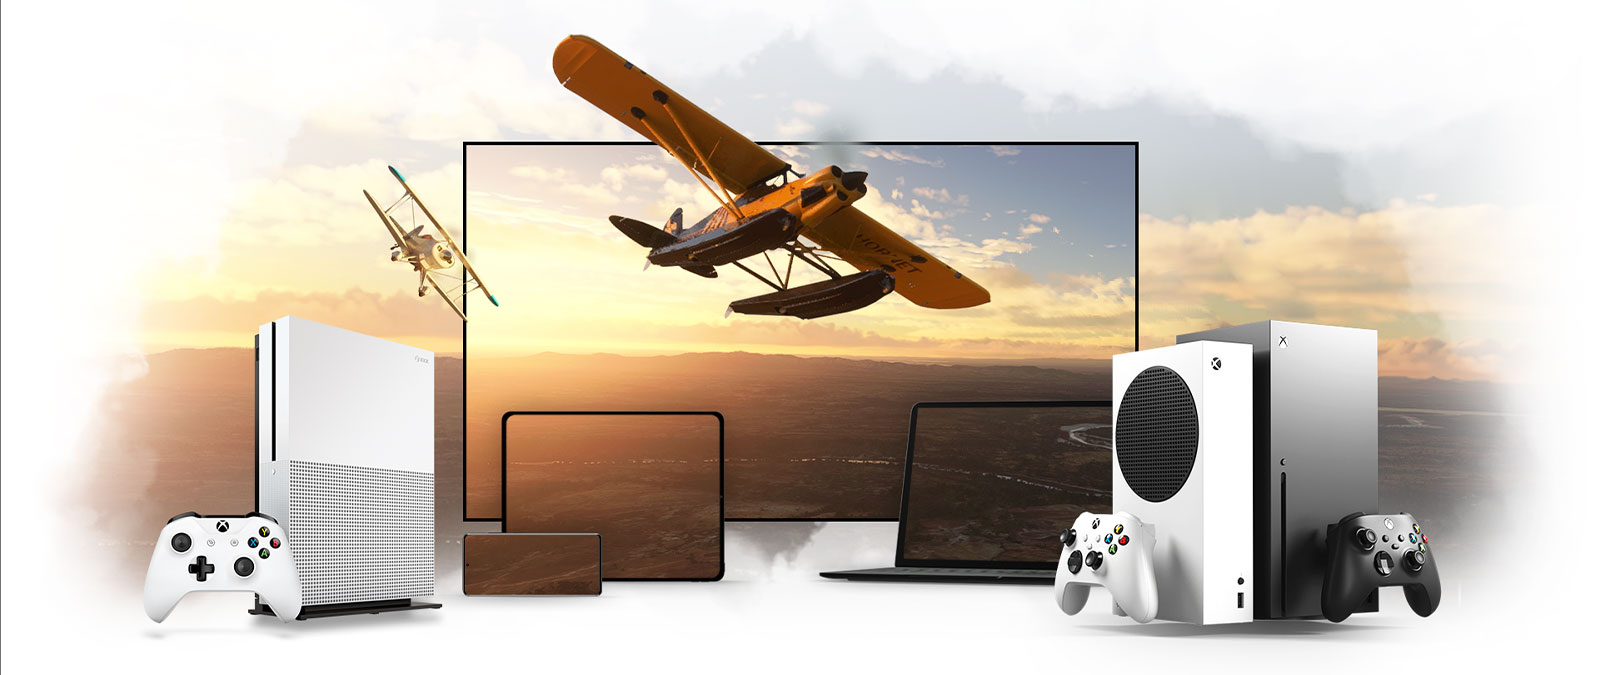 Rad zariadení vrátane televízora a konzol Xbox One a Xbox Series X, vrtuľové lietadlo letí od slnkom zaliateho horizontu.